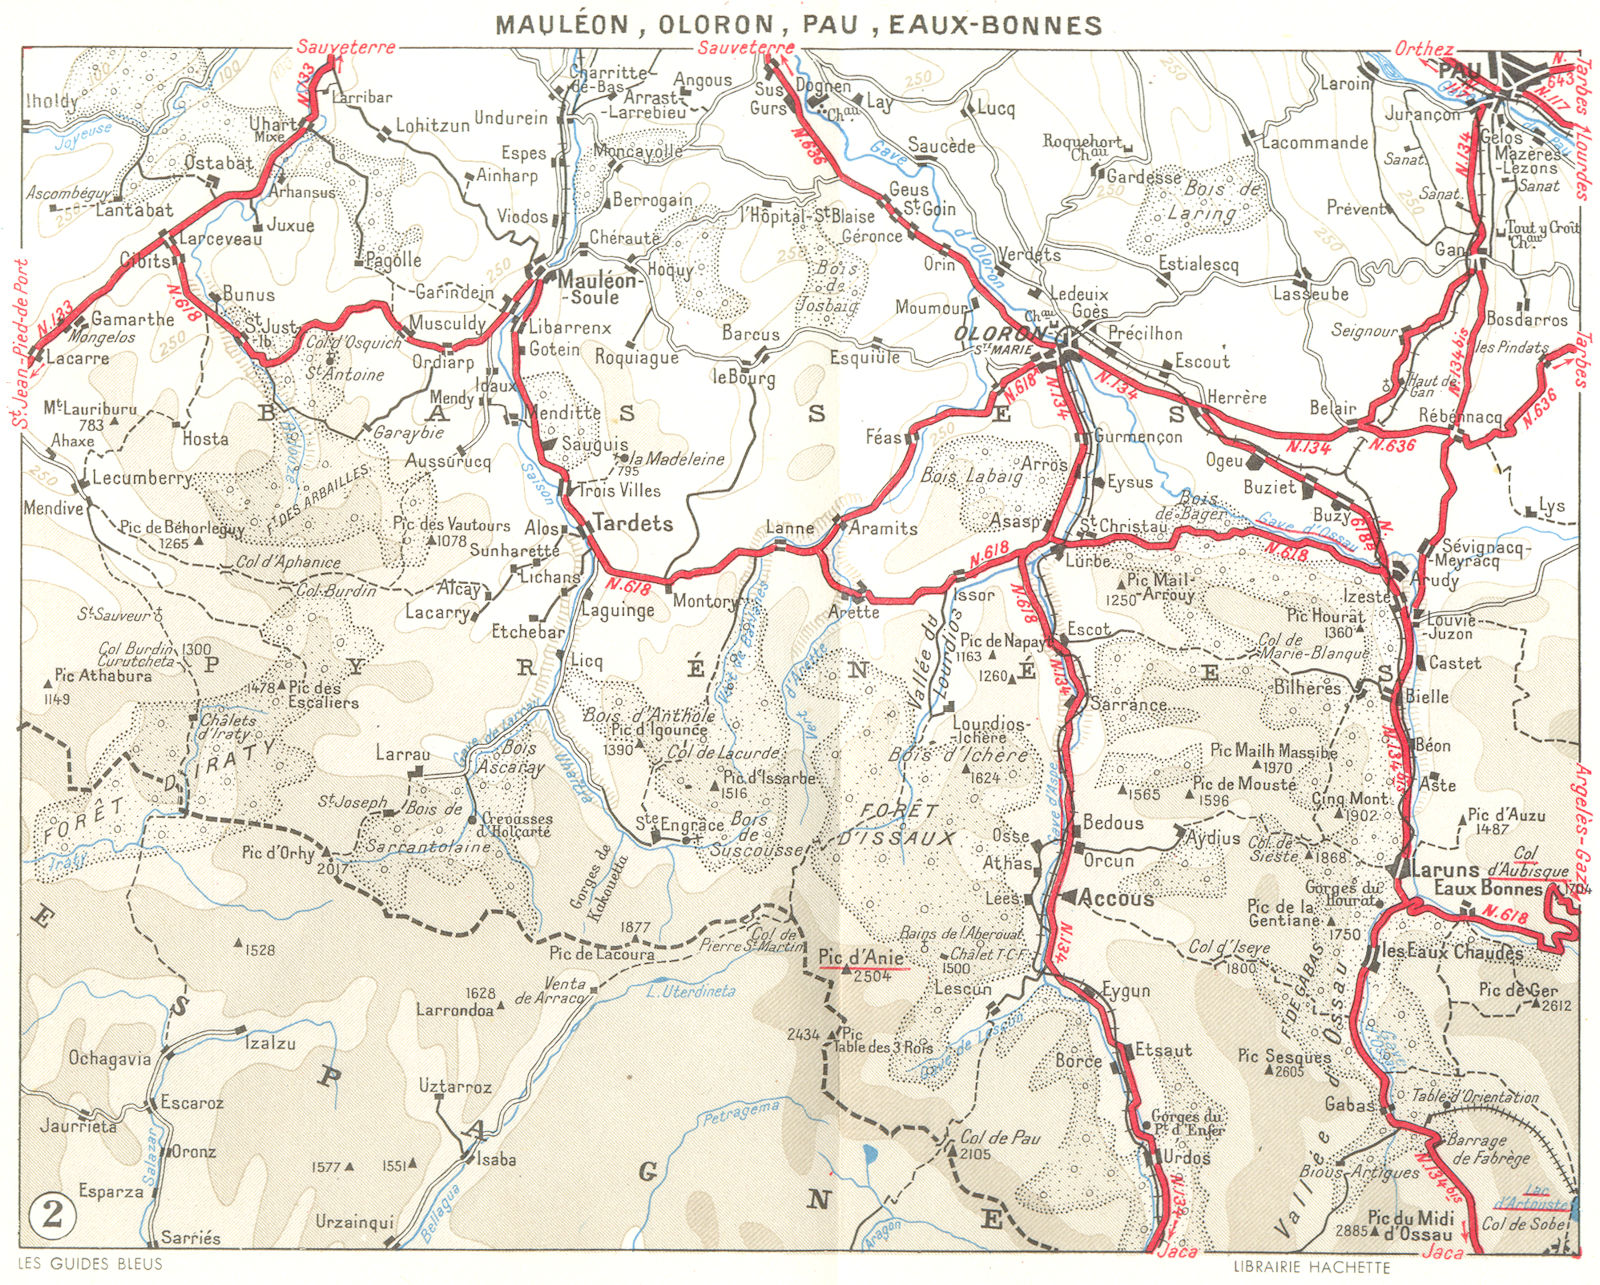 PAU. Mauleon, Oloron, Eaux-Bonnes 1959 old vintage map plan chart